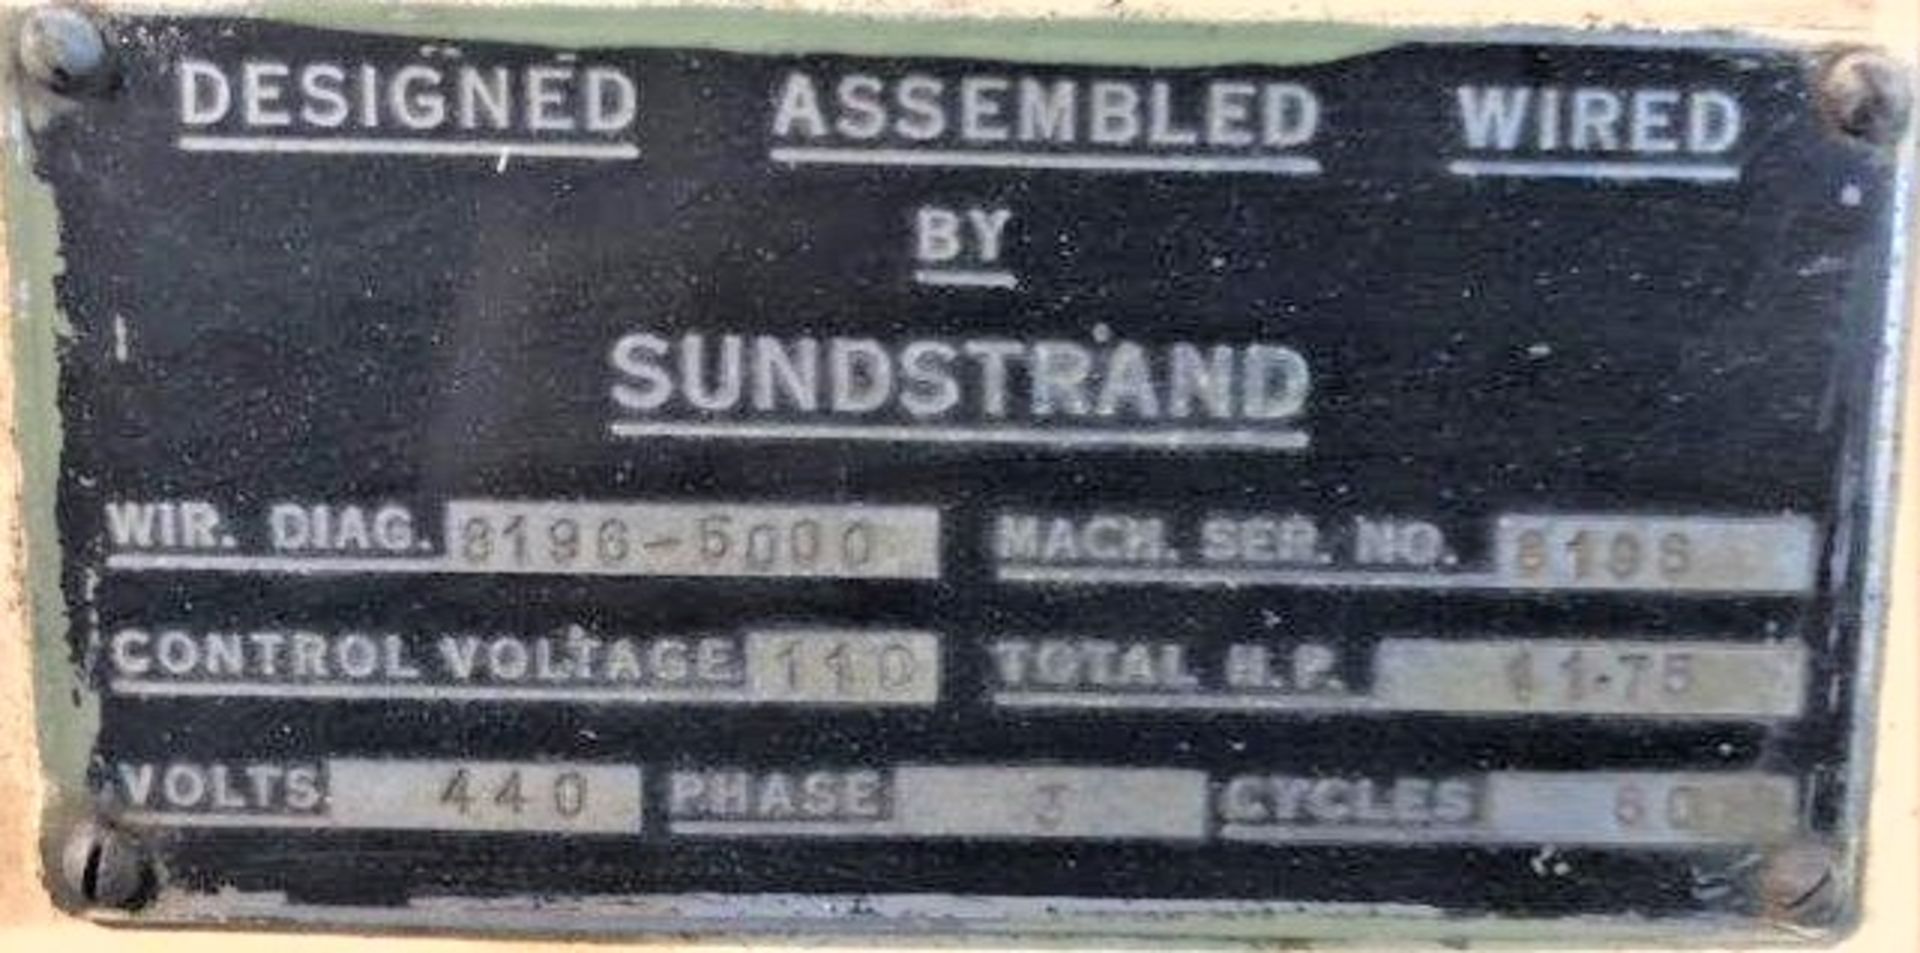 SUNDSTRAND-ARTER 16" MODEL H ROTARY SURFACE GRINDER MACHINE SERIAL NUMBER 8196 - Image 6 of 7